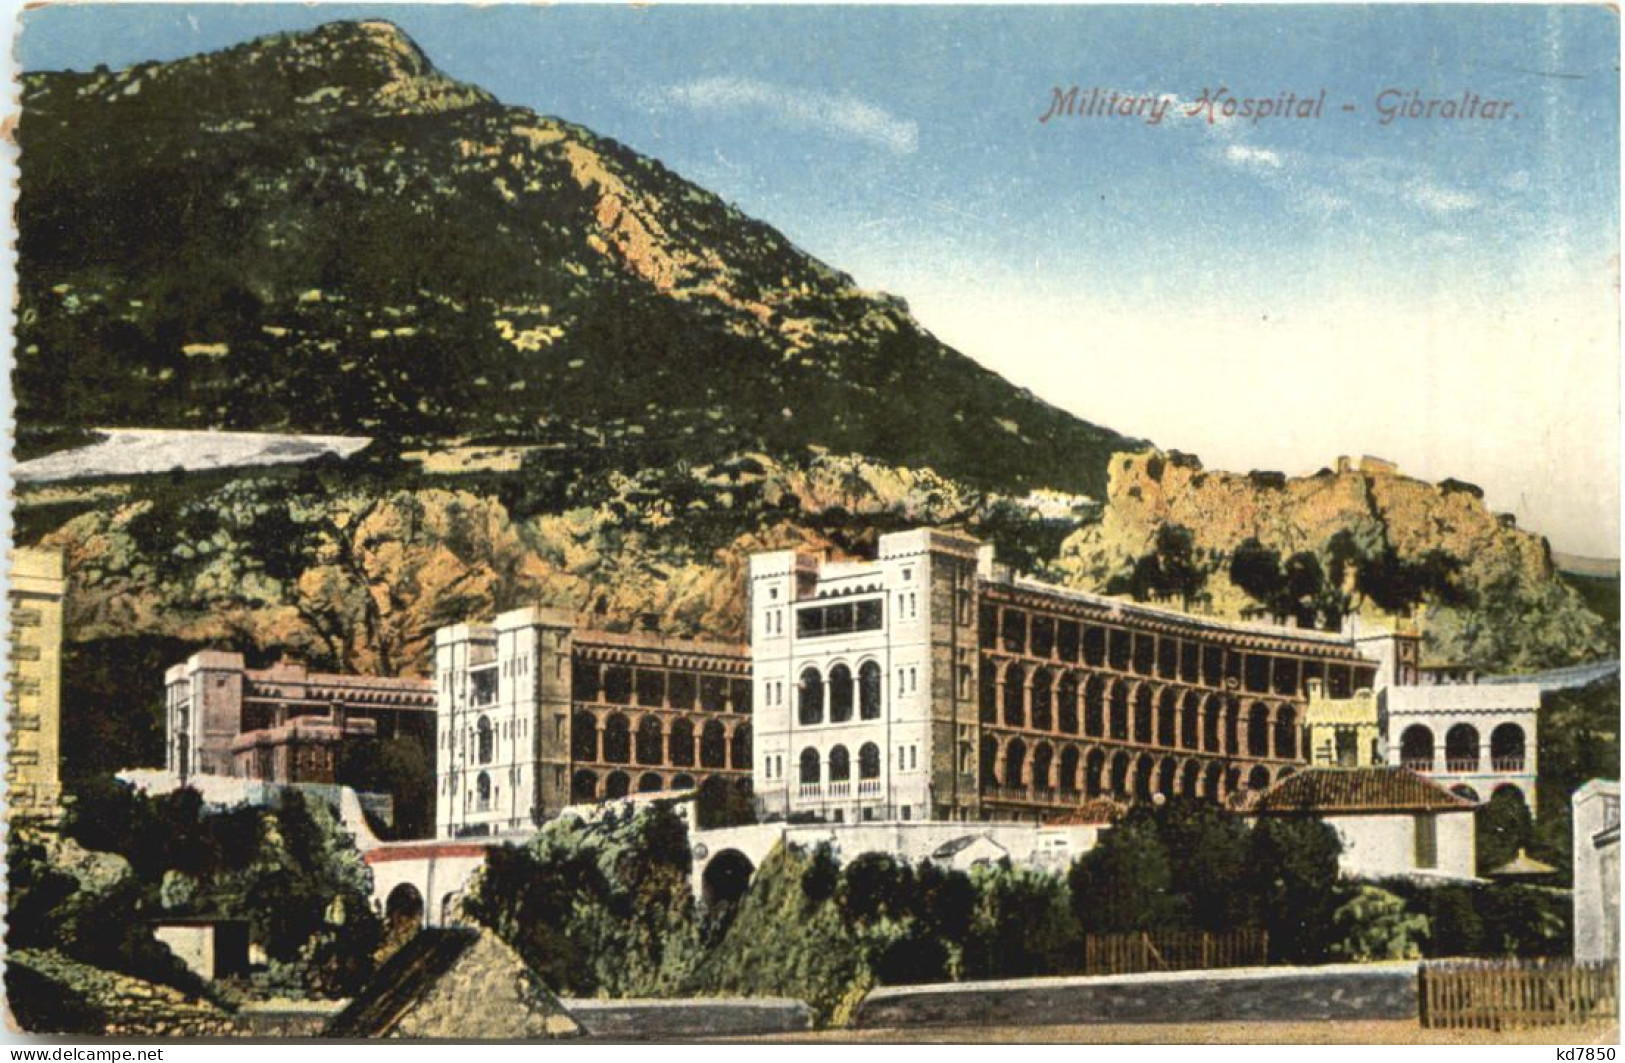 Gibraltar - Military Hospital - Gibilterra